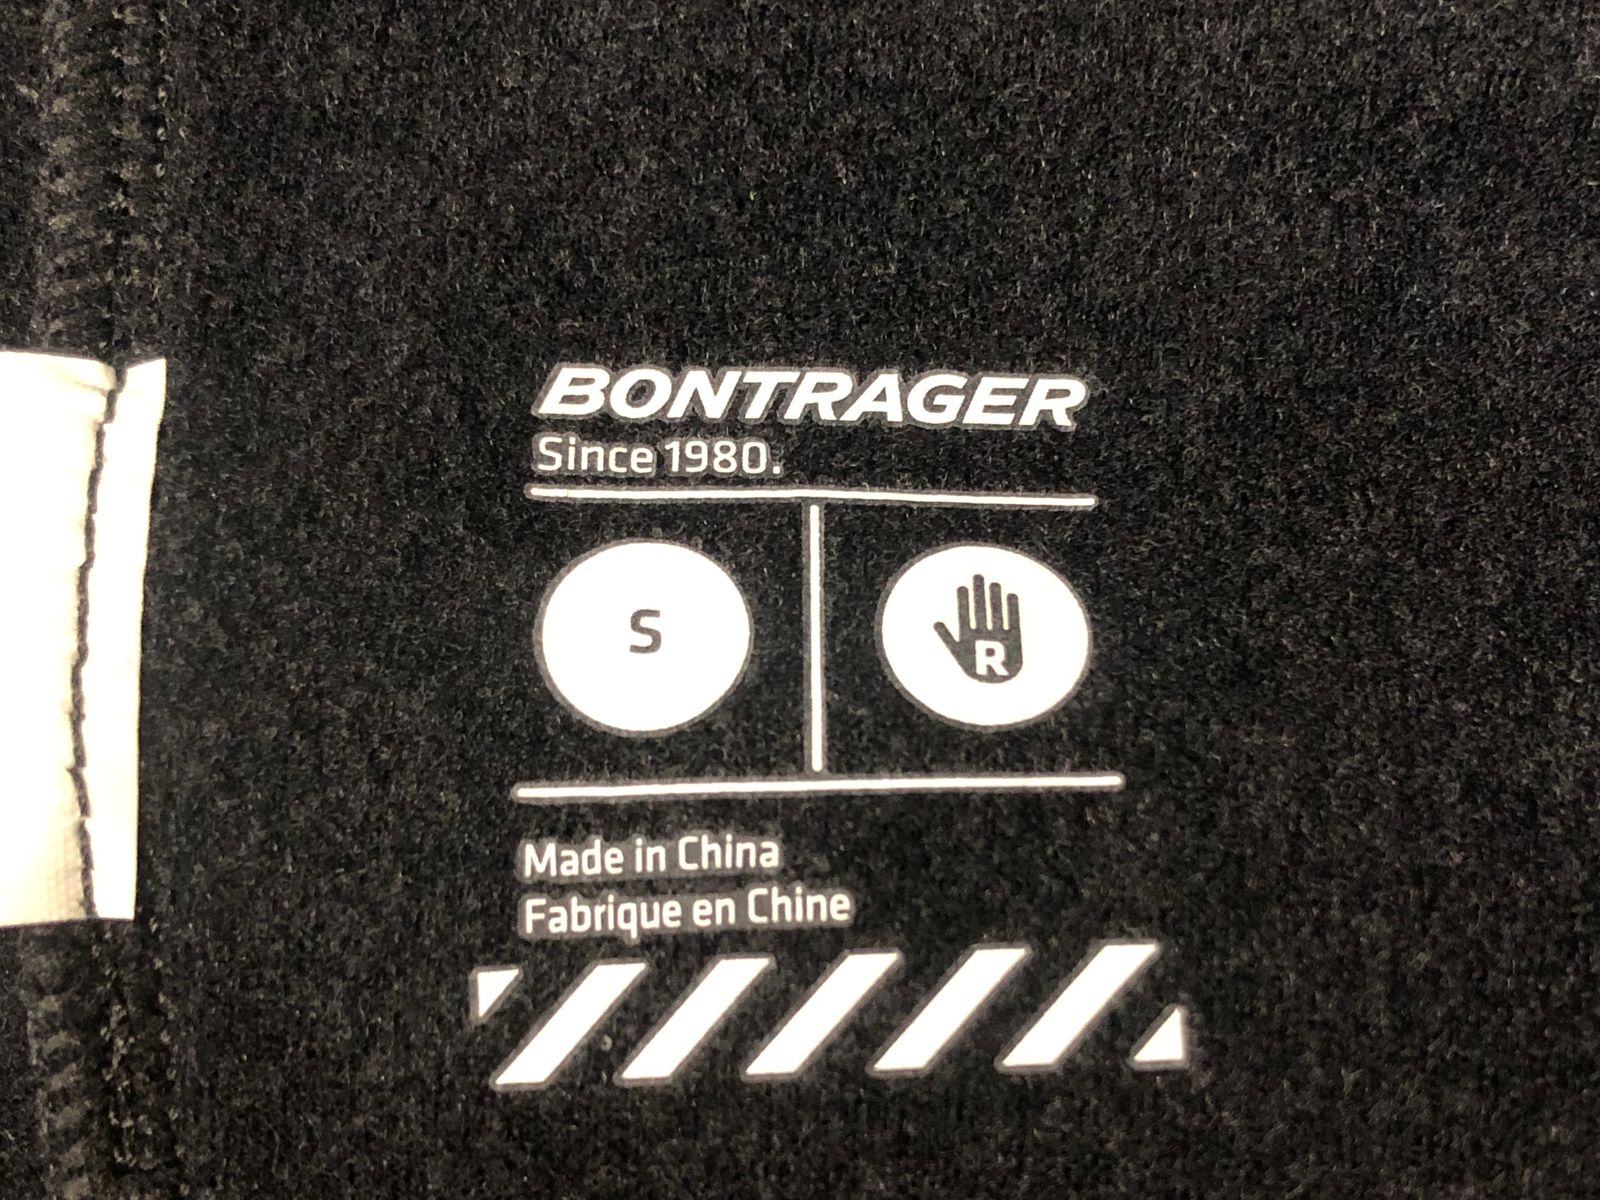 GC459 ボントレガー BONTRAGER 裏起毛 レッグウォーマー 黒黄 リフレクター S ビチアモーレ サイクルジャージ館 メルカリ